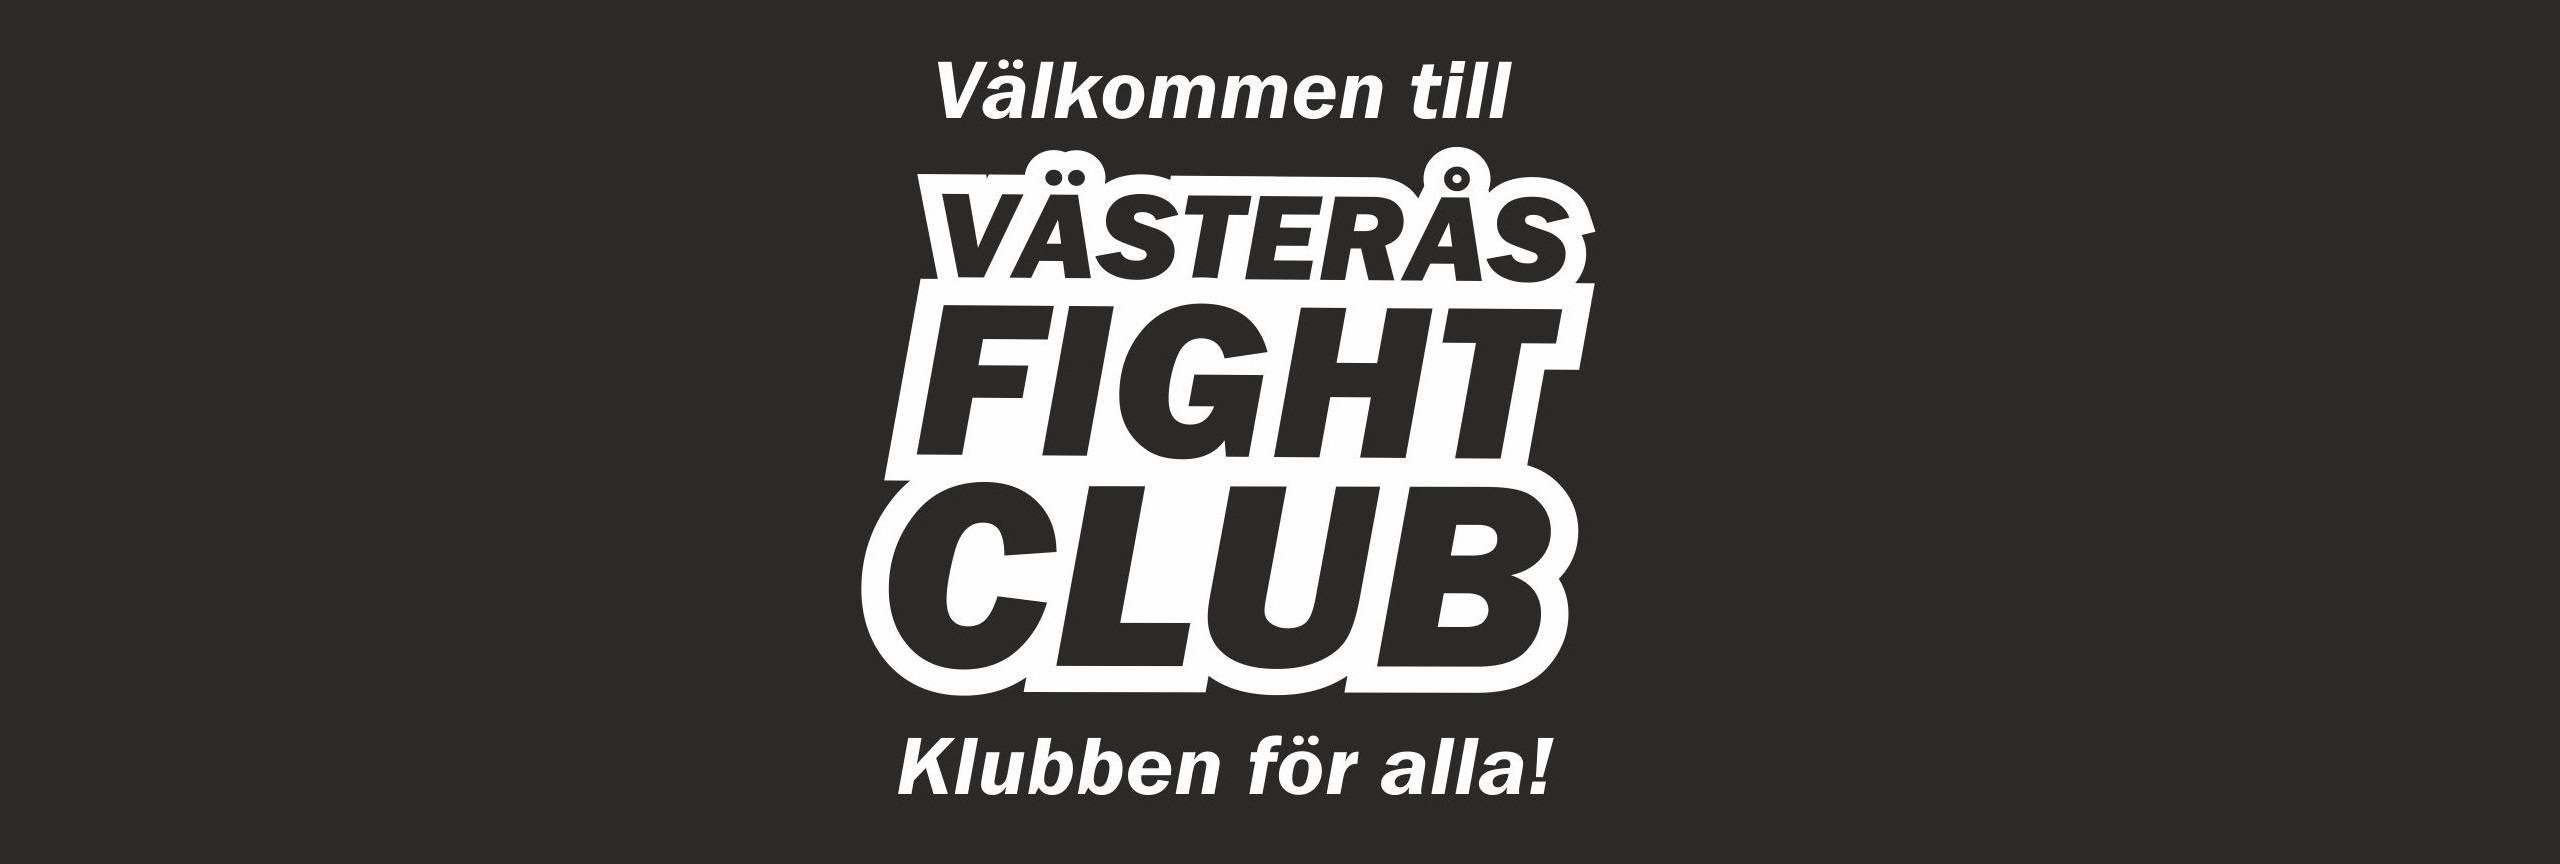 Boxning Västerås